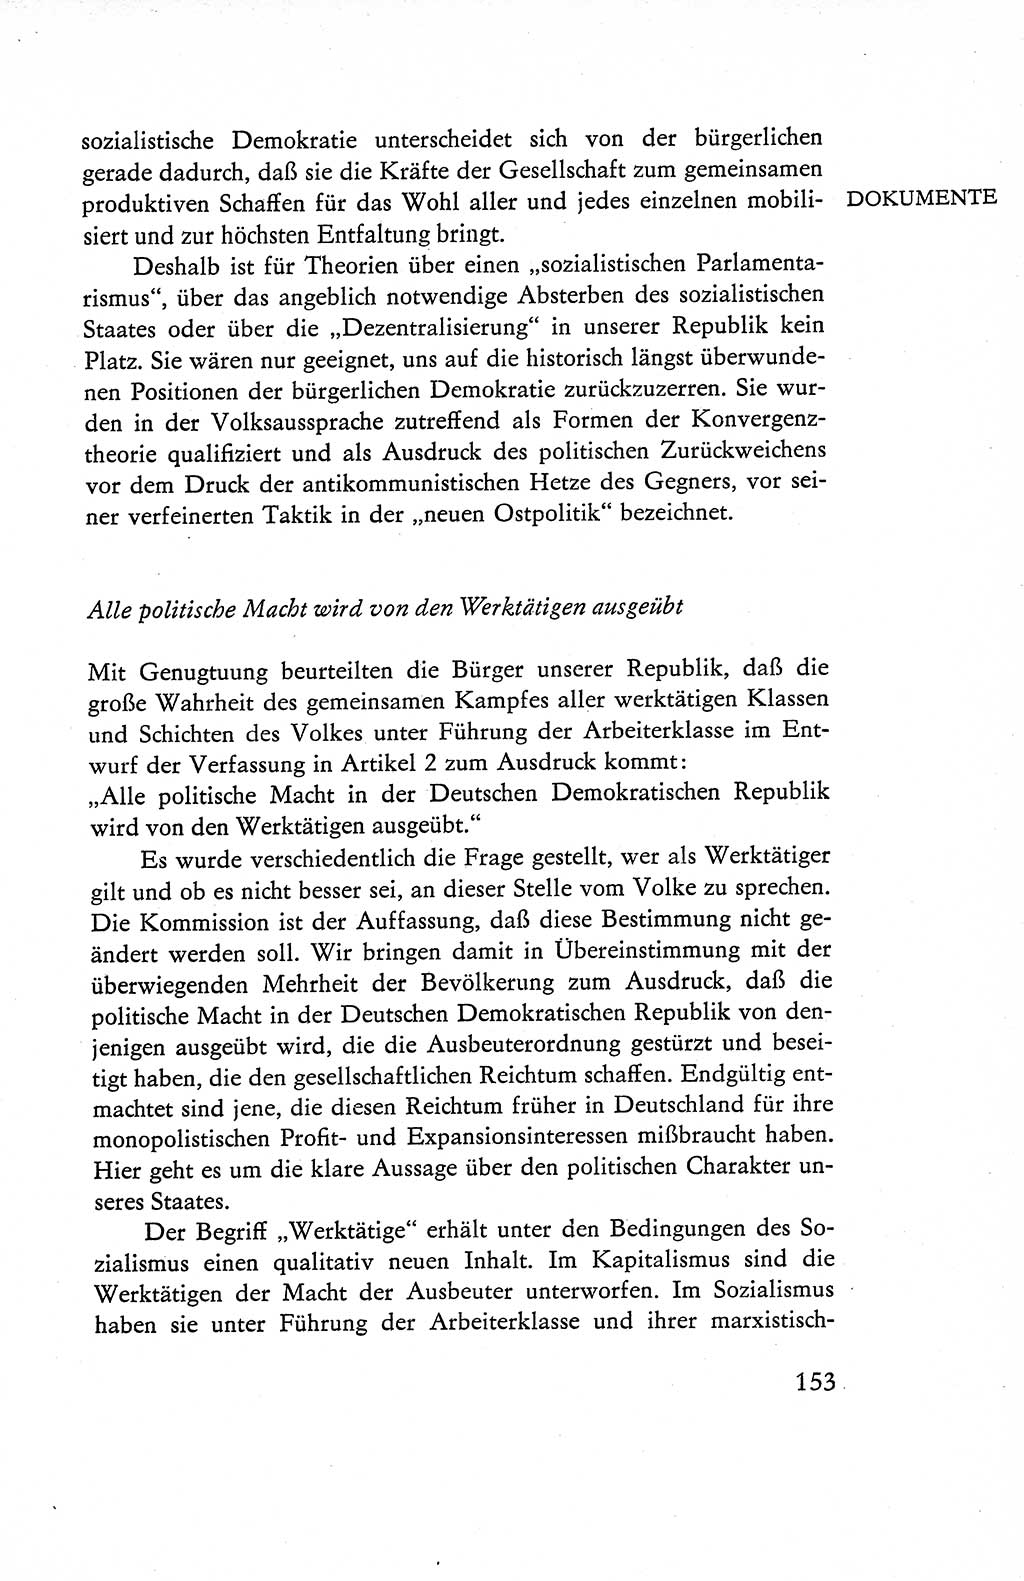 Verfassung der Deutschen Demokratischen Republik (DDR), Dokumente, Kommentar 1969, Band 1, Seite 153 (Verf. DDR Dok. Komm. 1969, Bd. 1, S. 153)